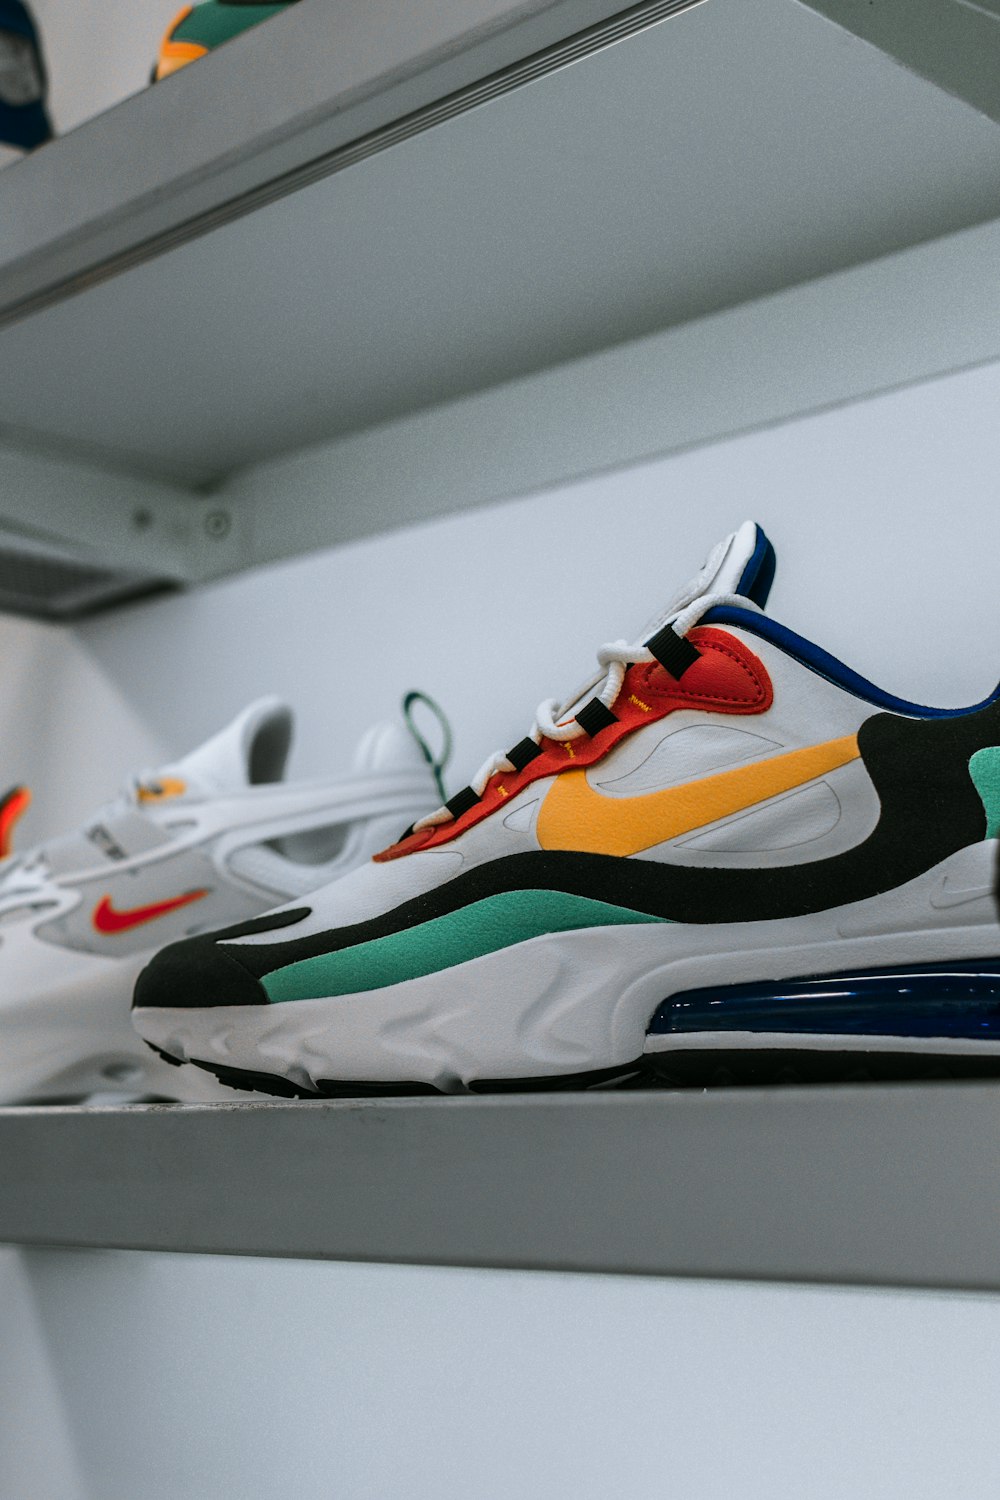 multicolored Nike running shoes photo – Free Image on Unsplash